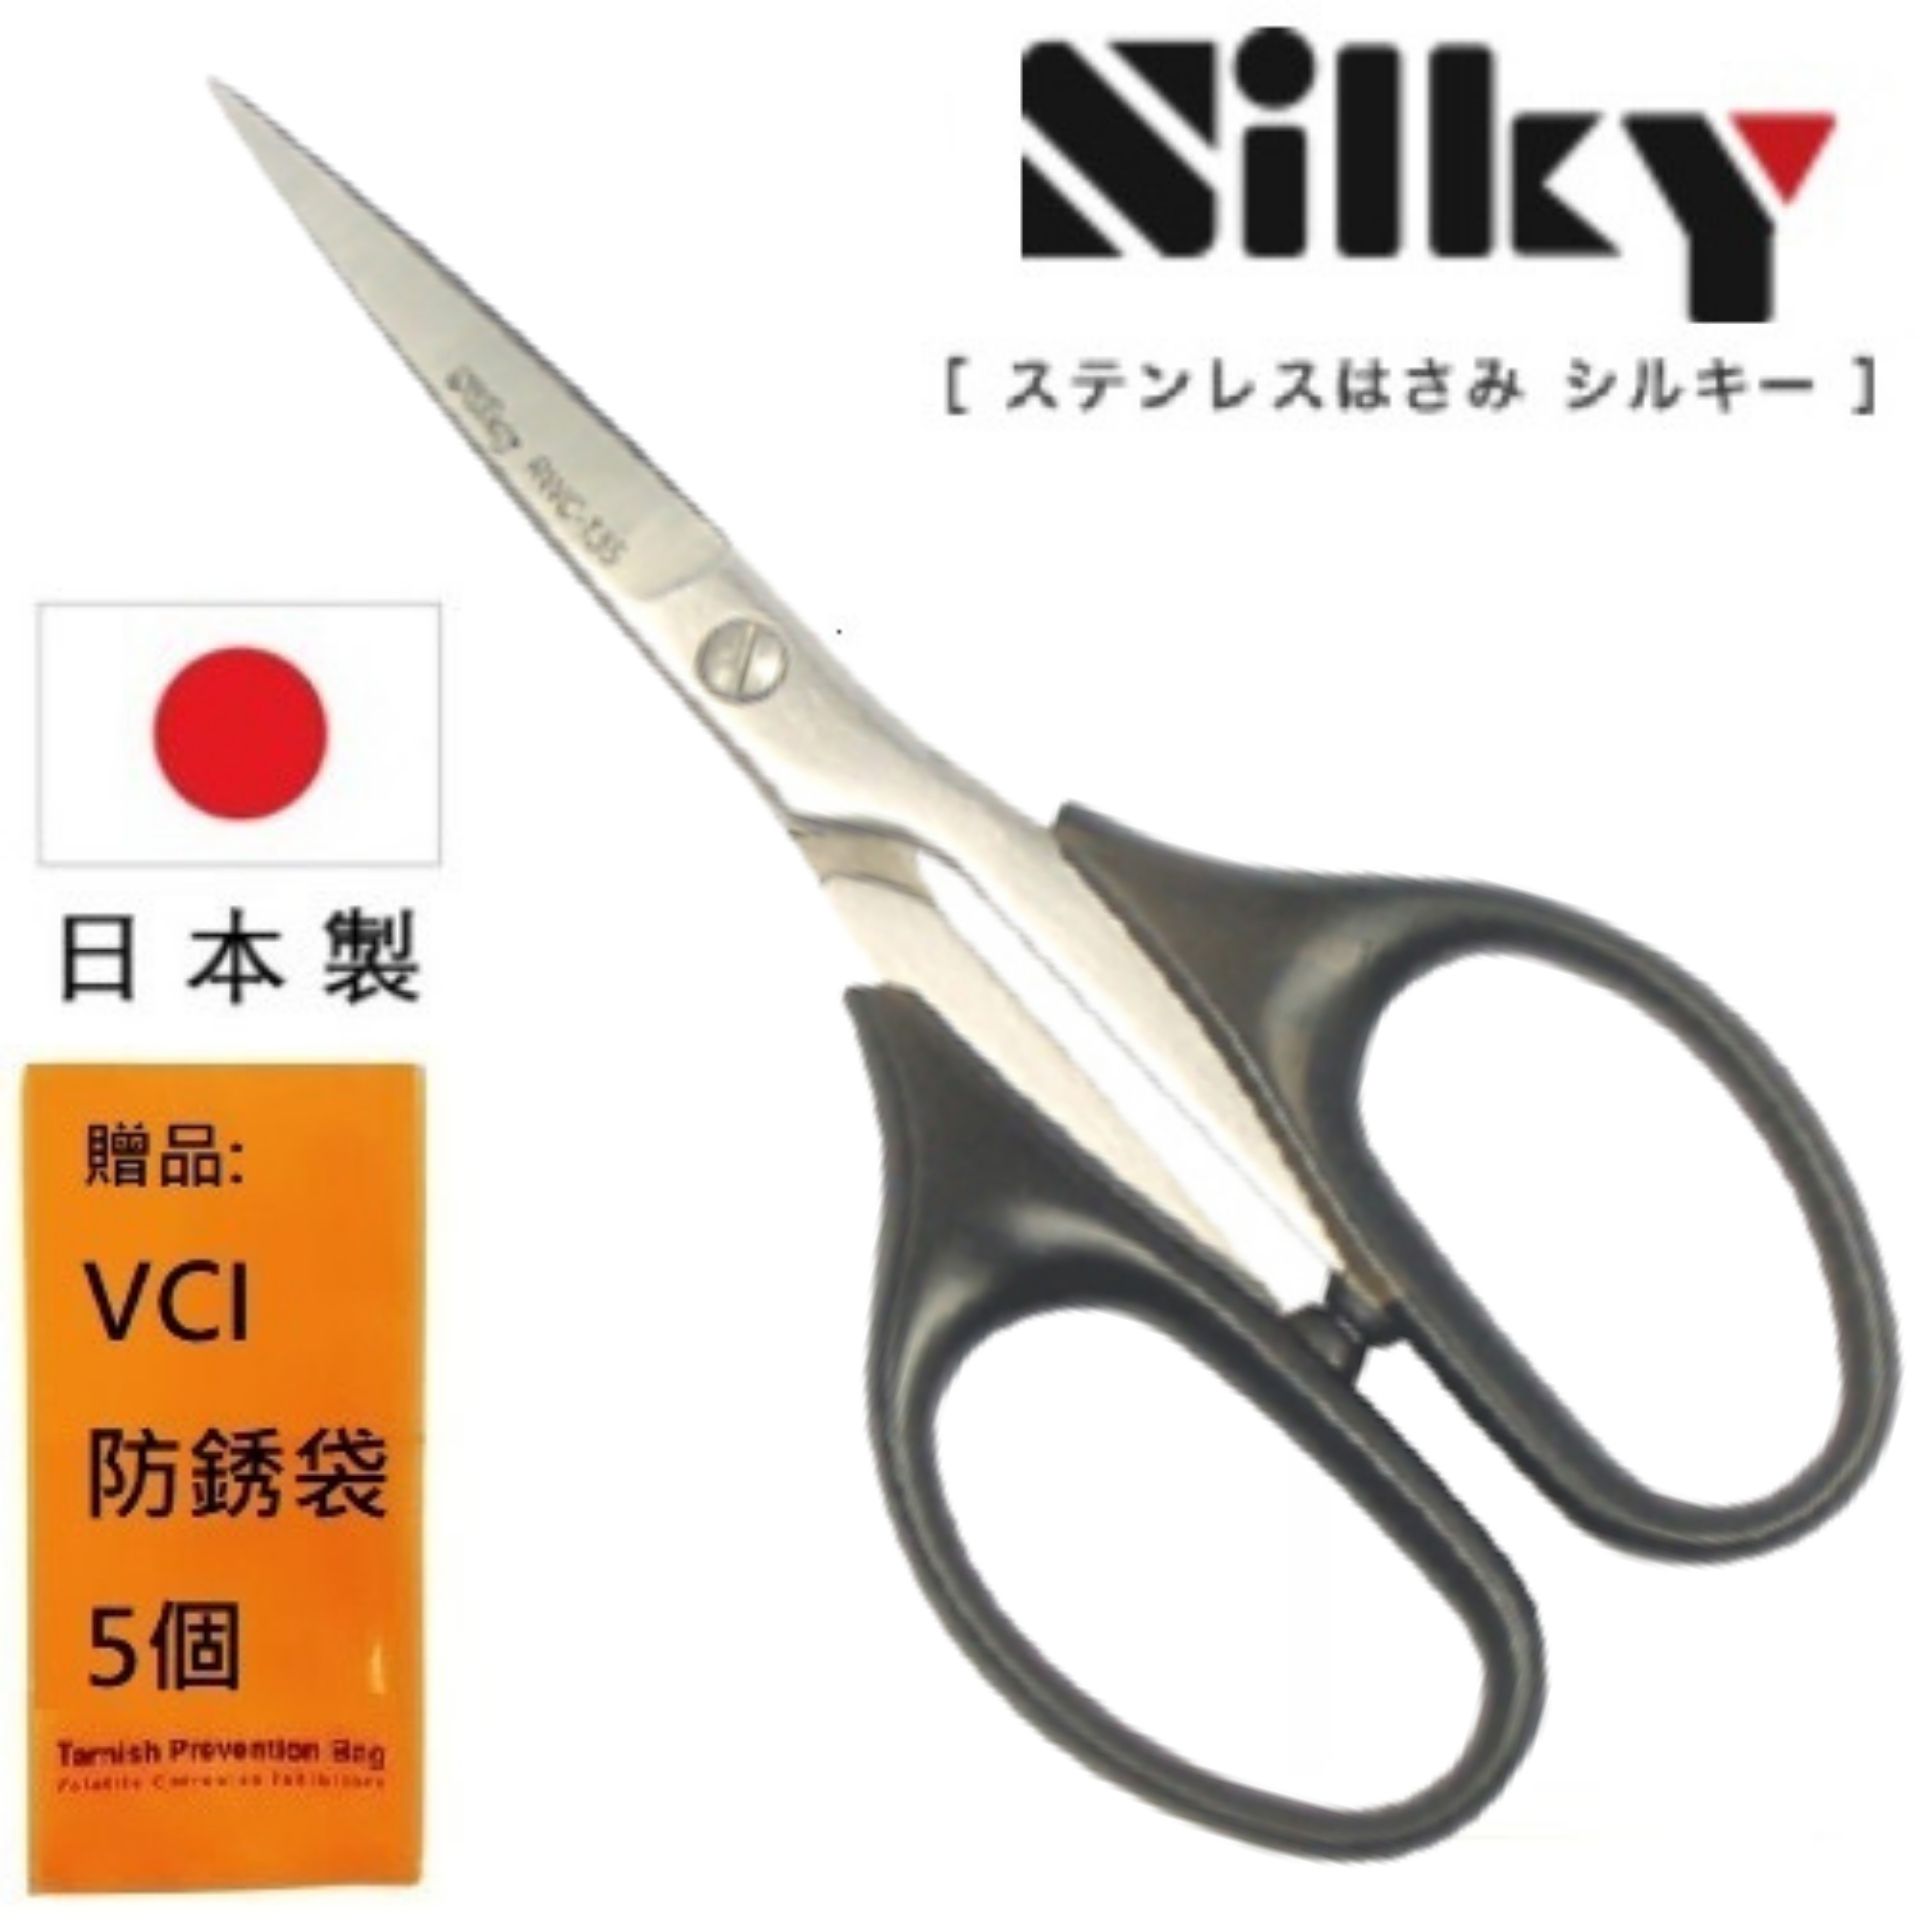 【日本SILKY】手工藝剪刀-135mm 日本製造 原裝進口刃物鋼